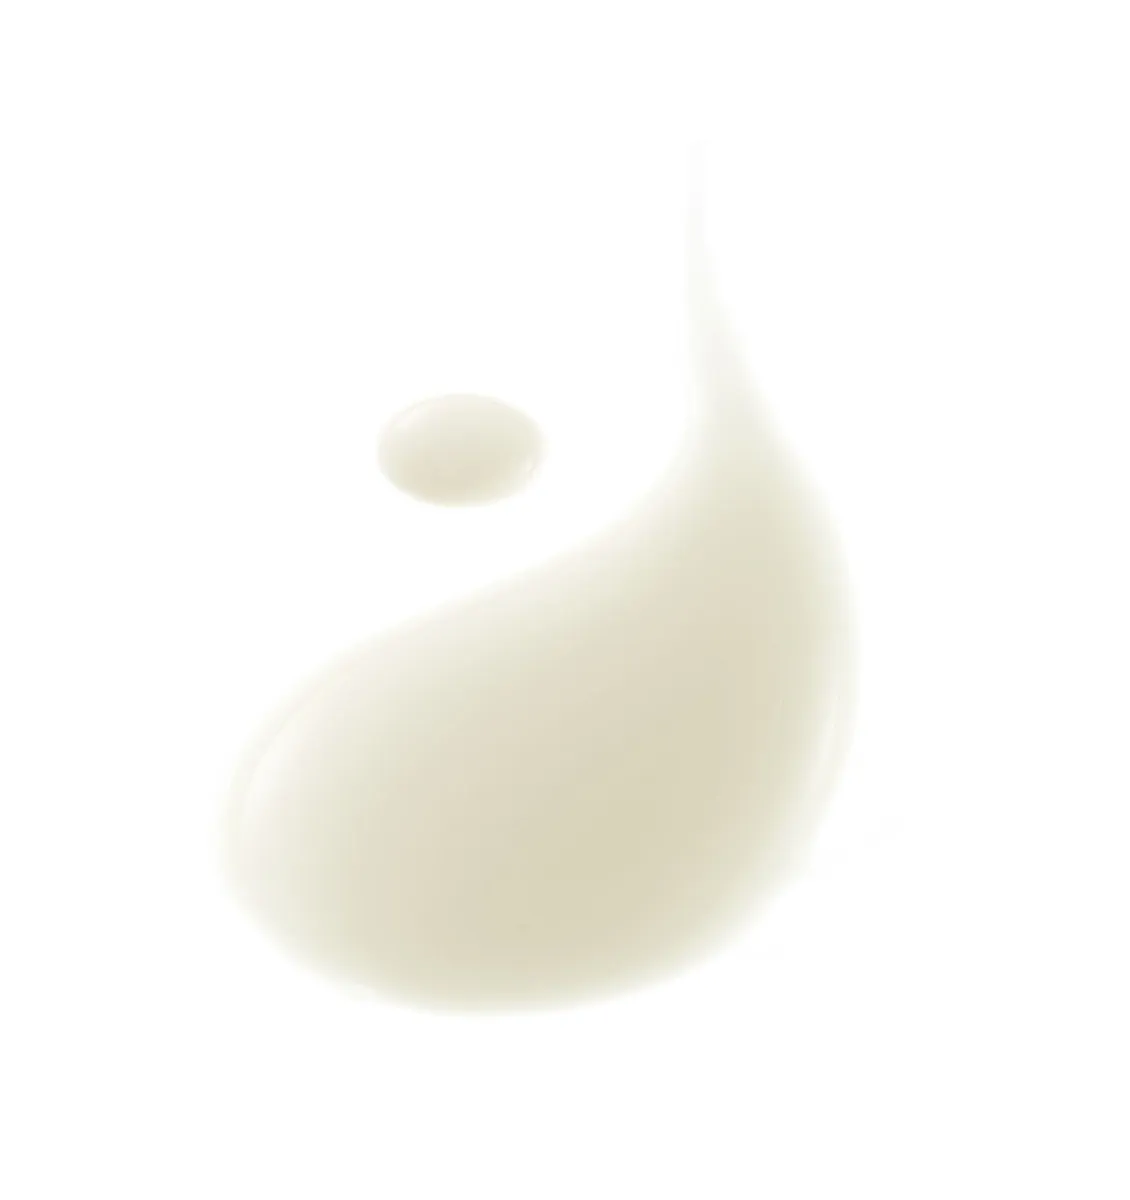 A-Derma Exomega Control Emolienční mléko pro suchou kůži se sklonem k atopii 400 ml